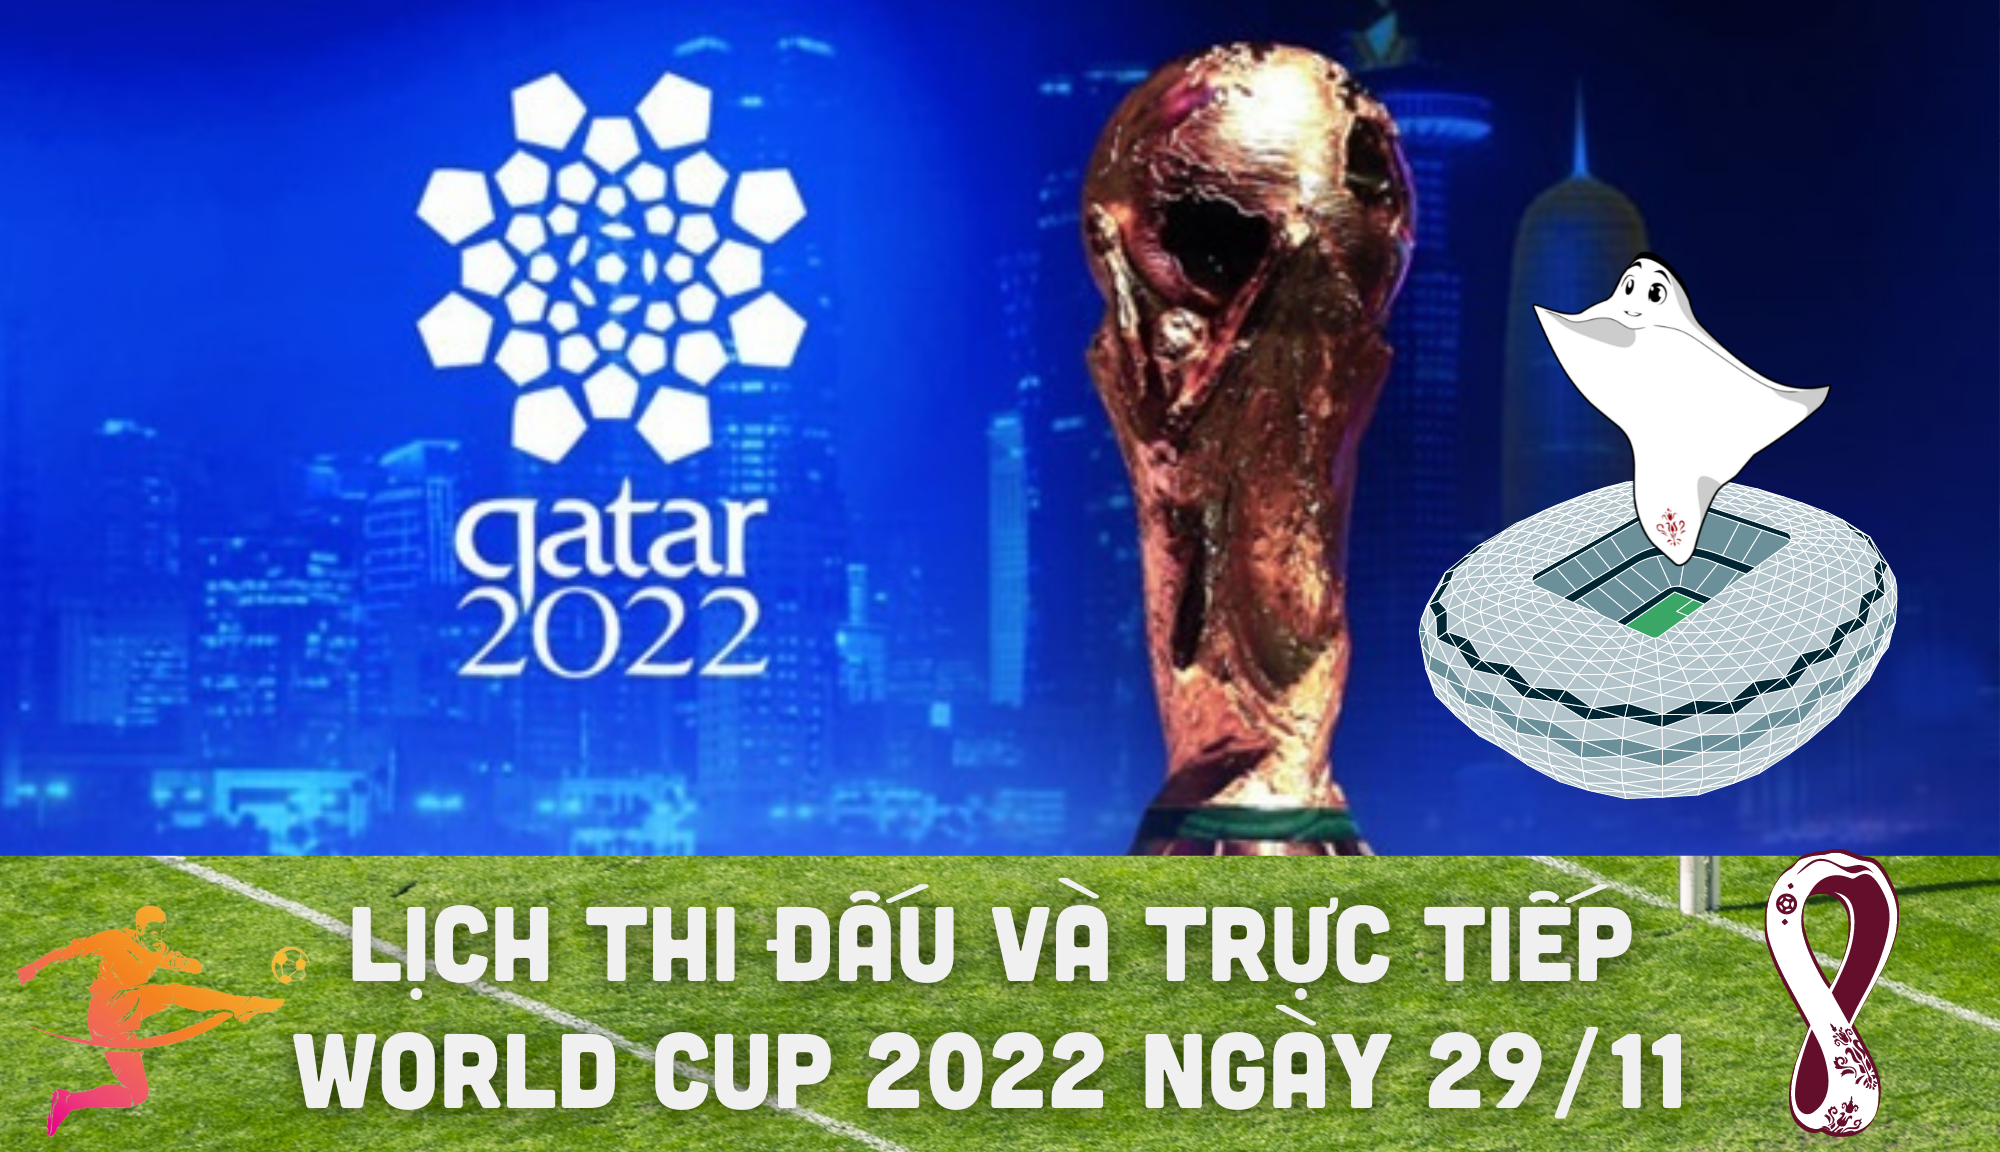 Lịch thi đấu và trực tiếp World Cup 2022 ngày 29/11